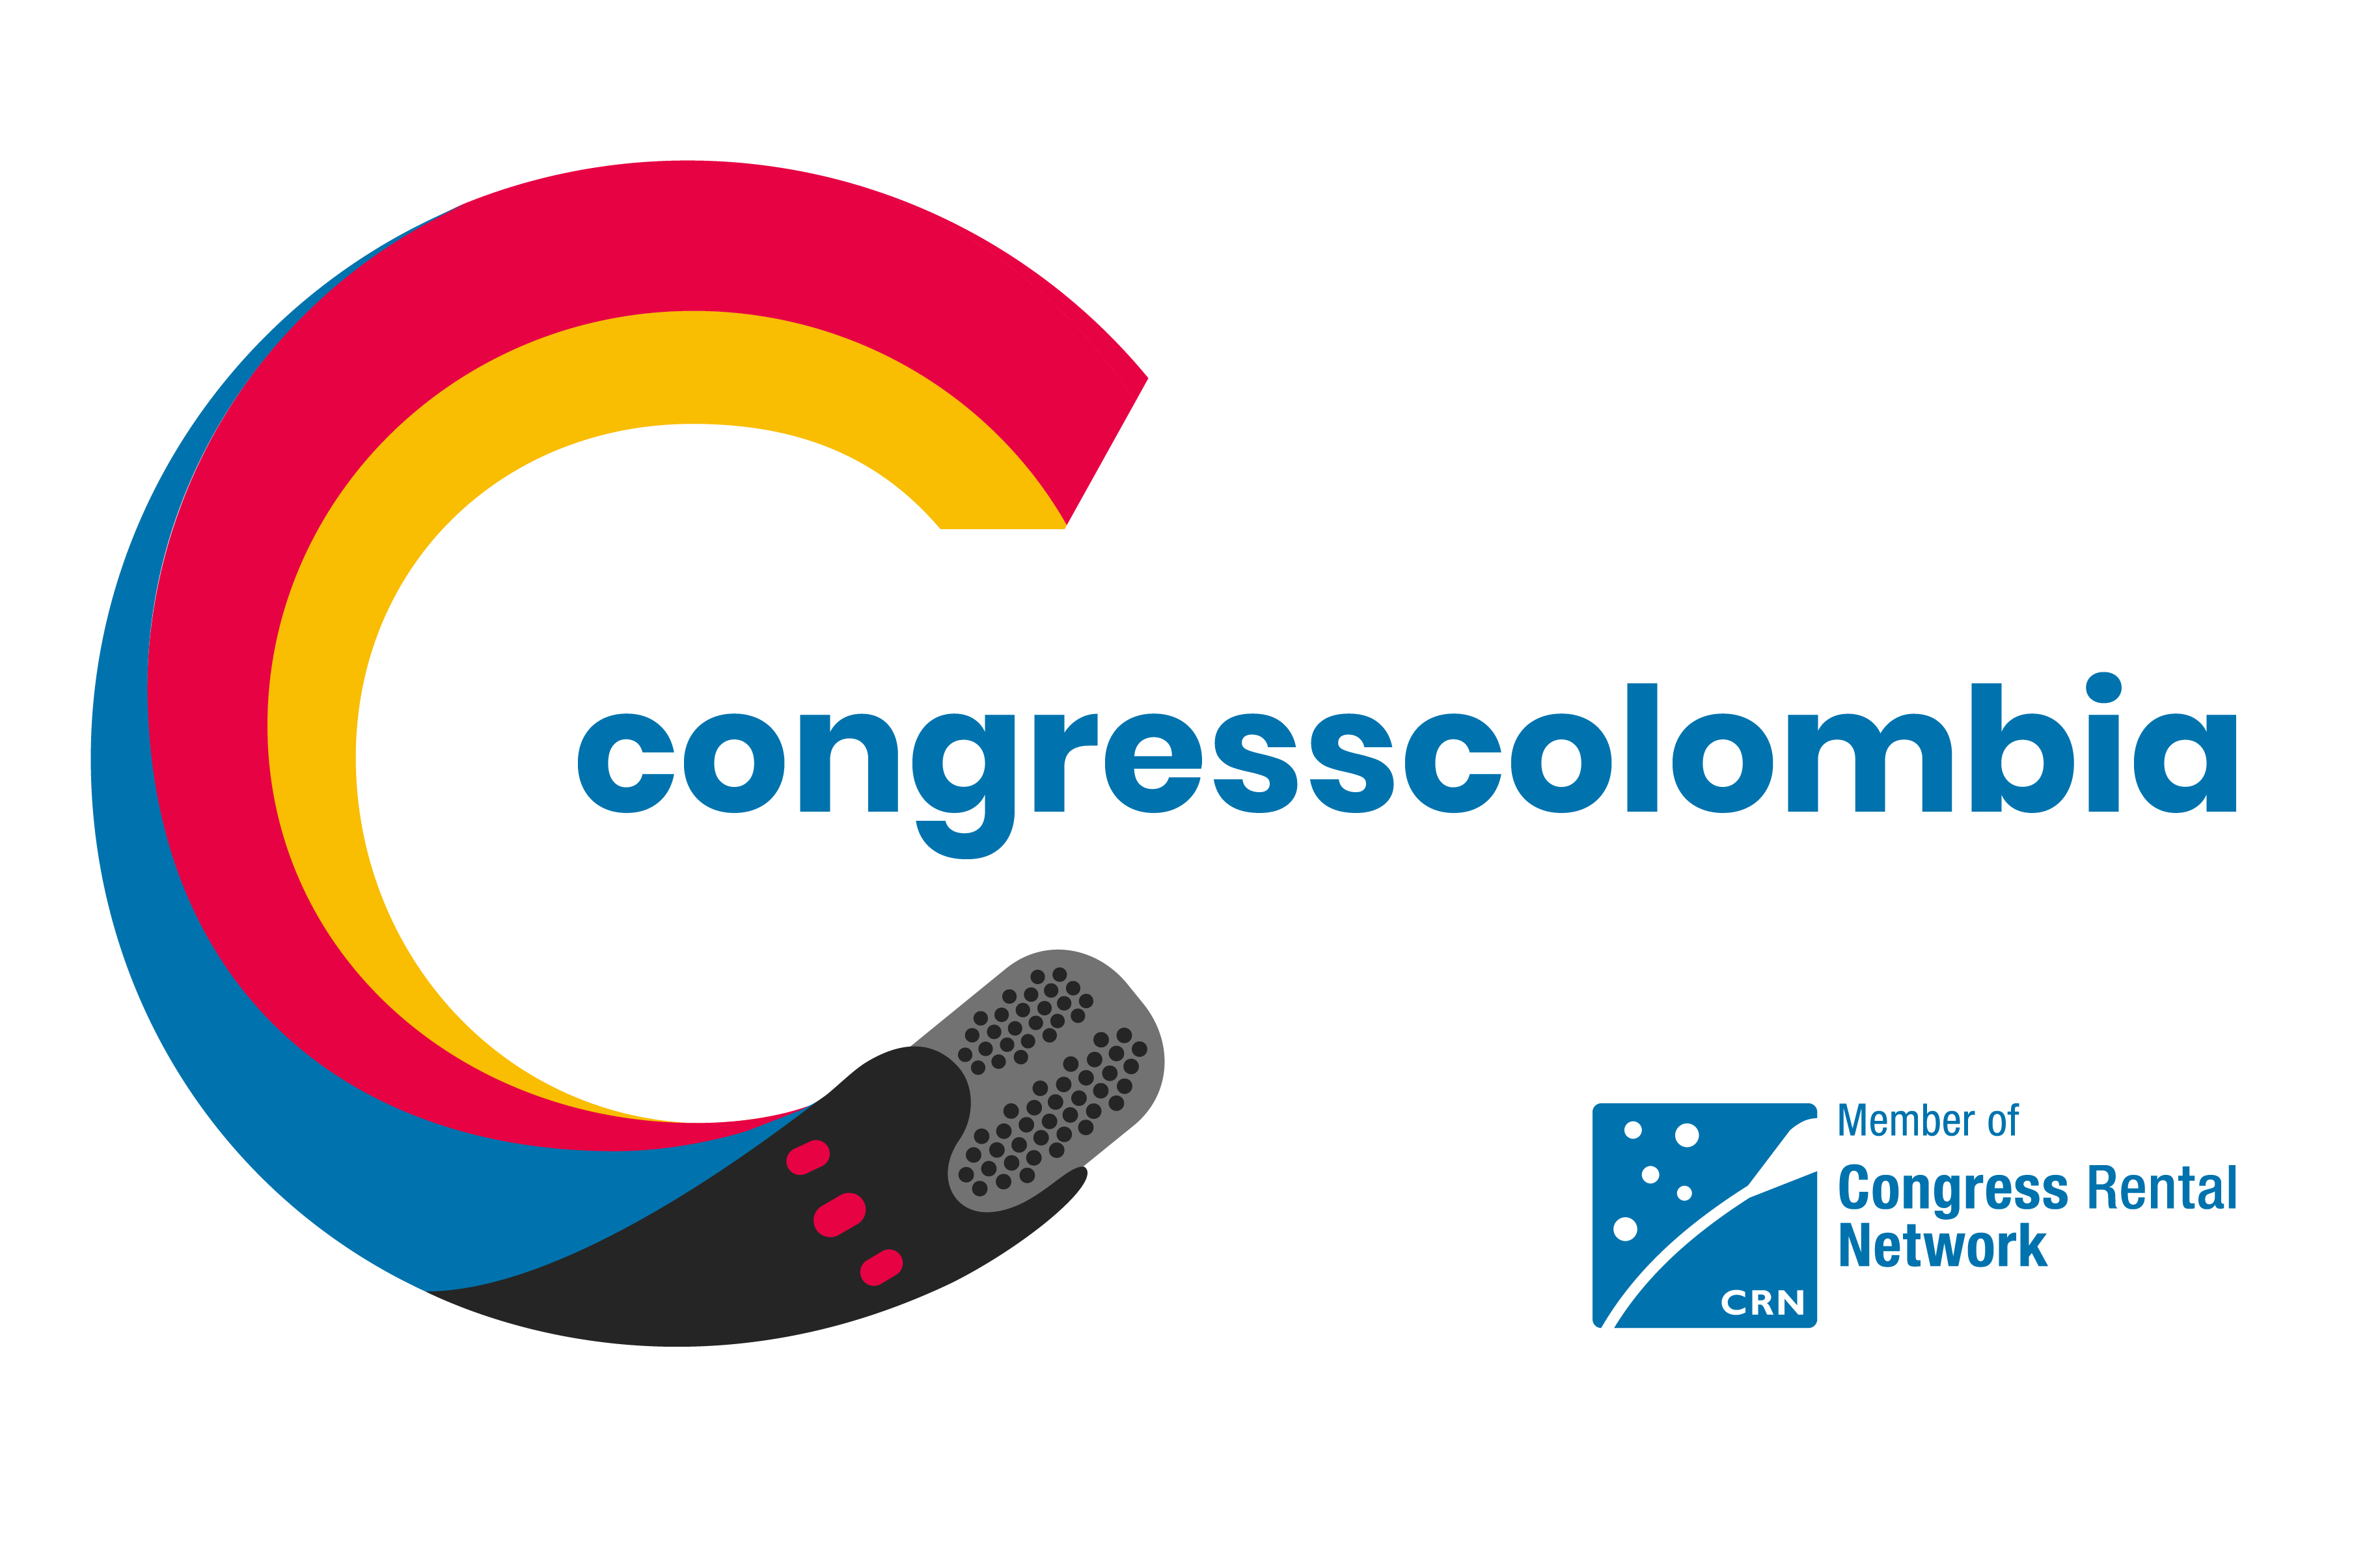 Congresscolombia.com,